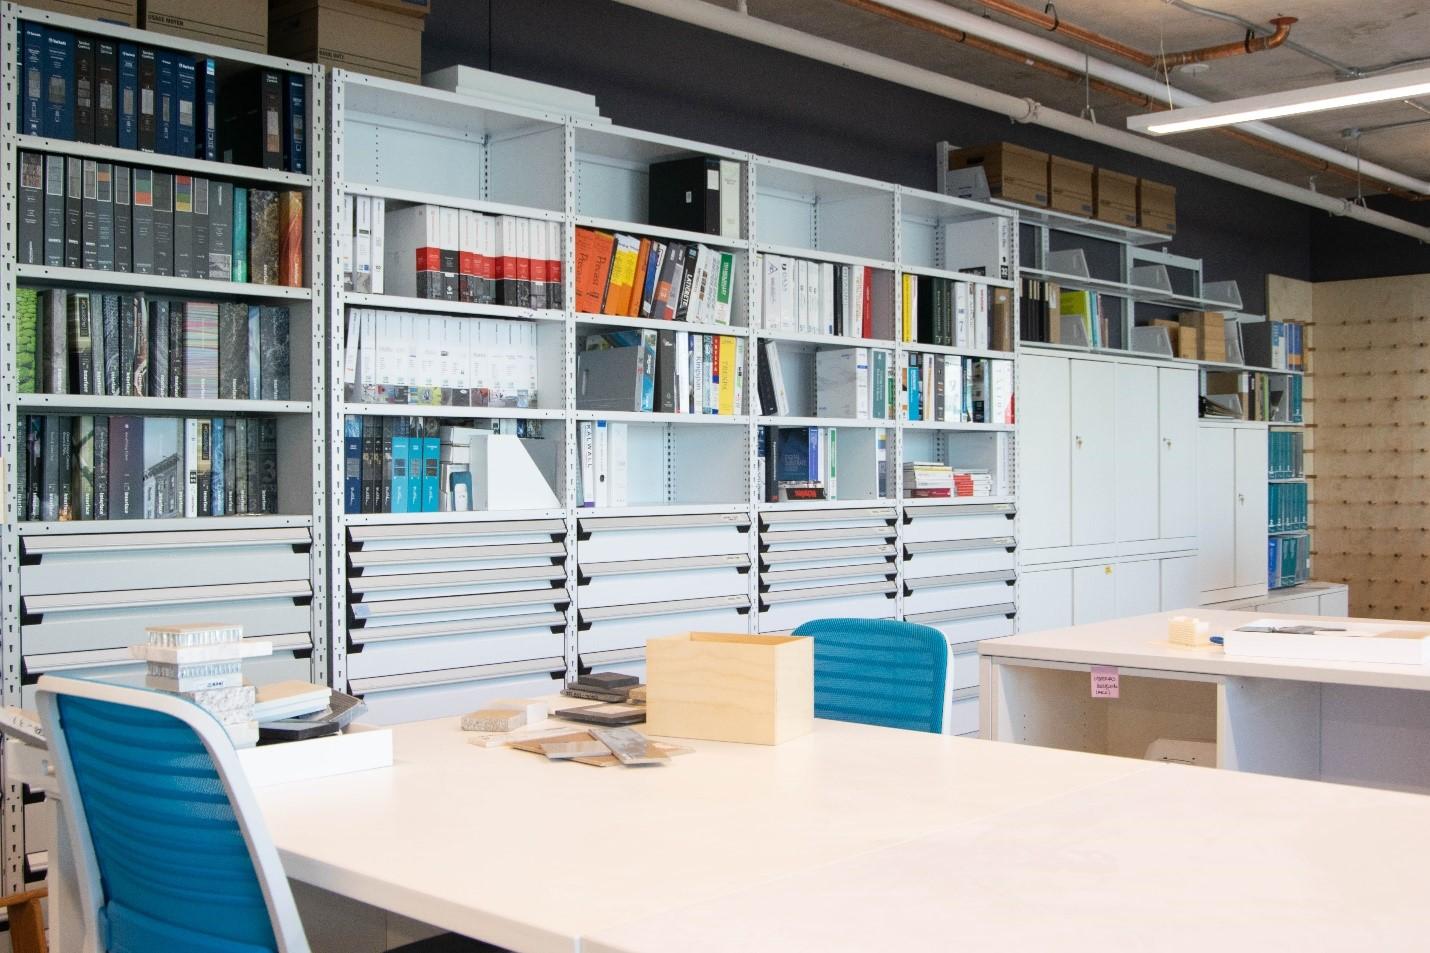 Materials Library provides collaborative workspaces, BDP Quadrangle, 2022